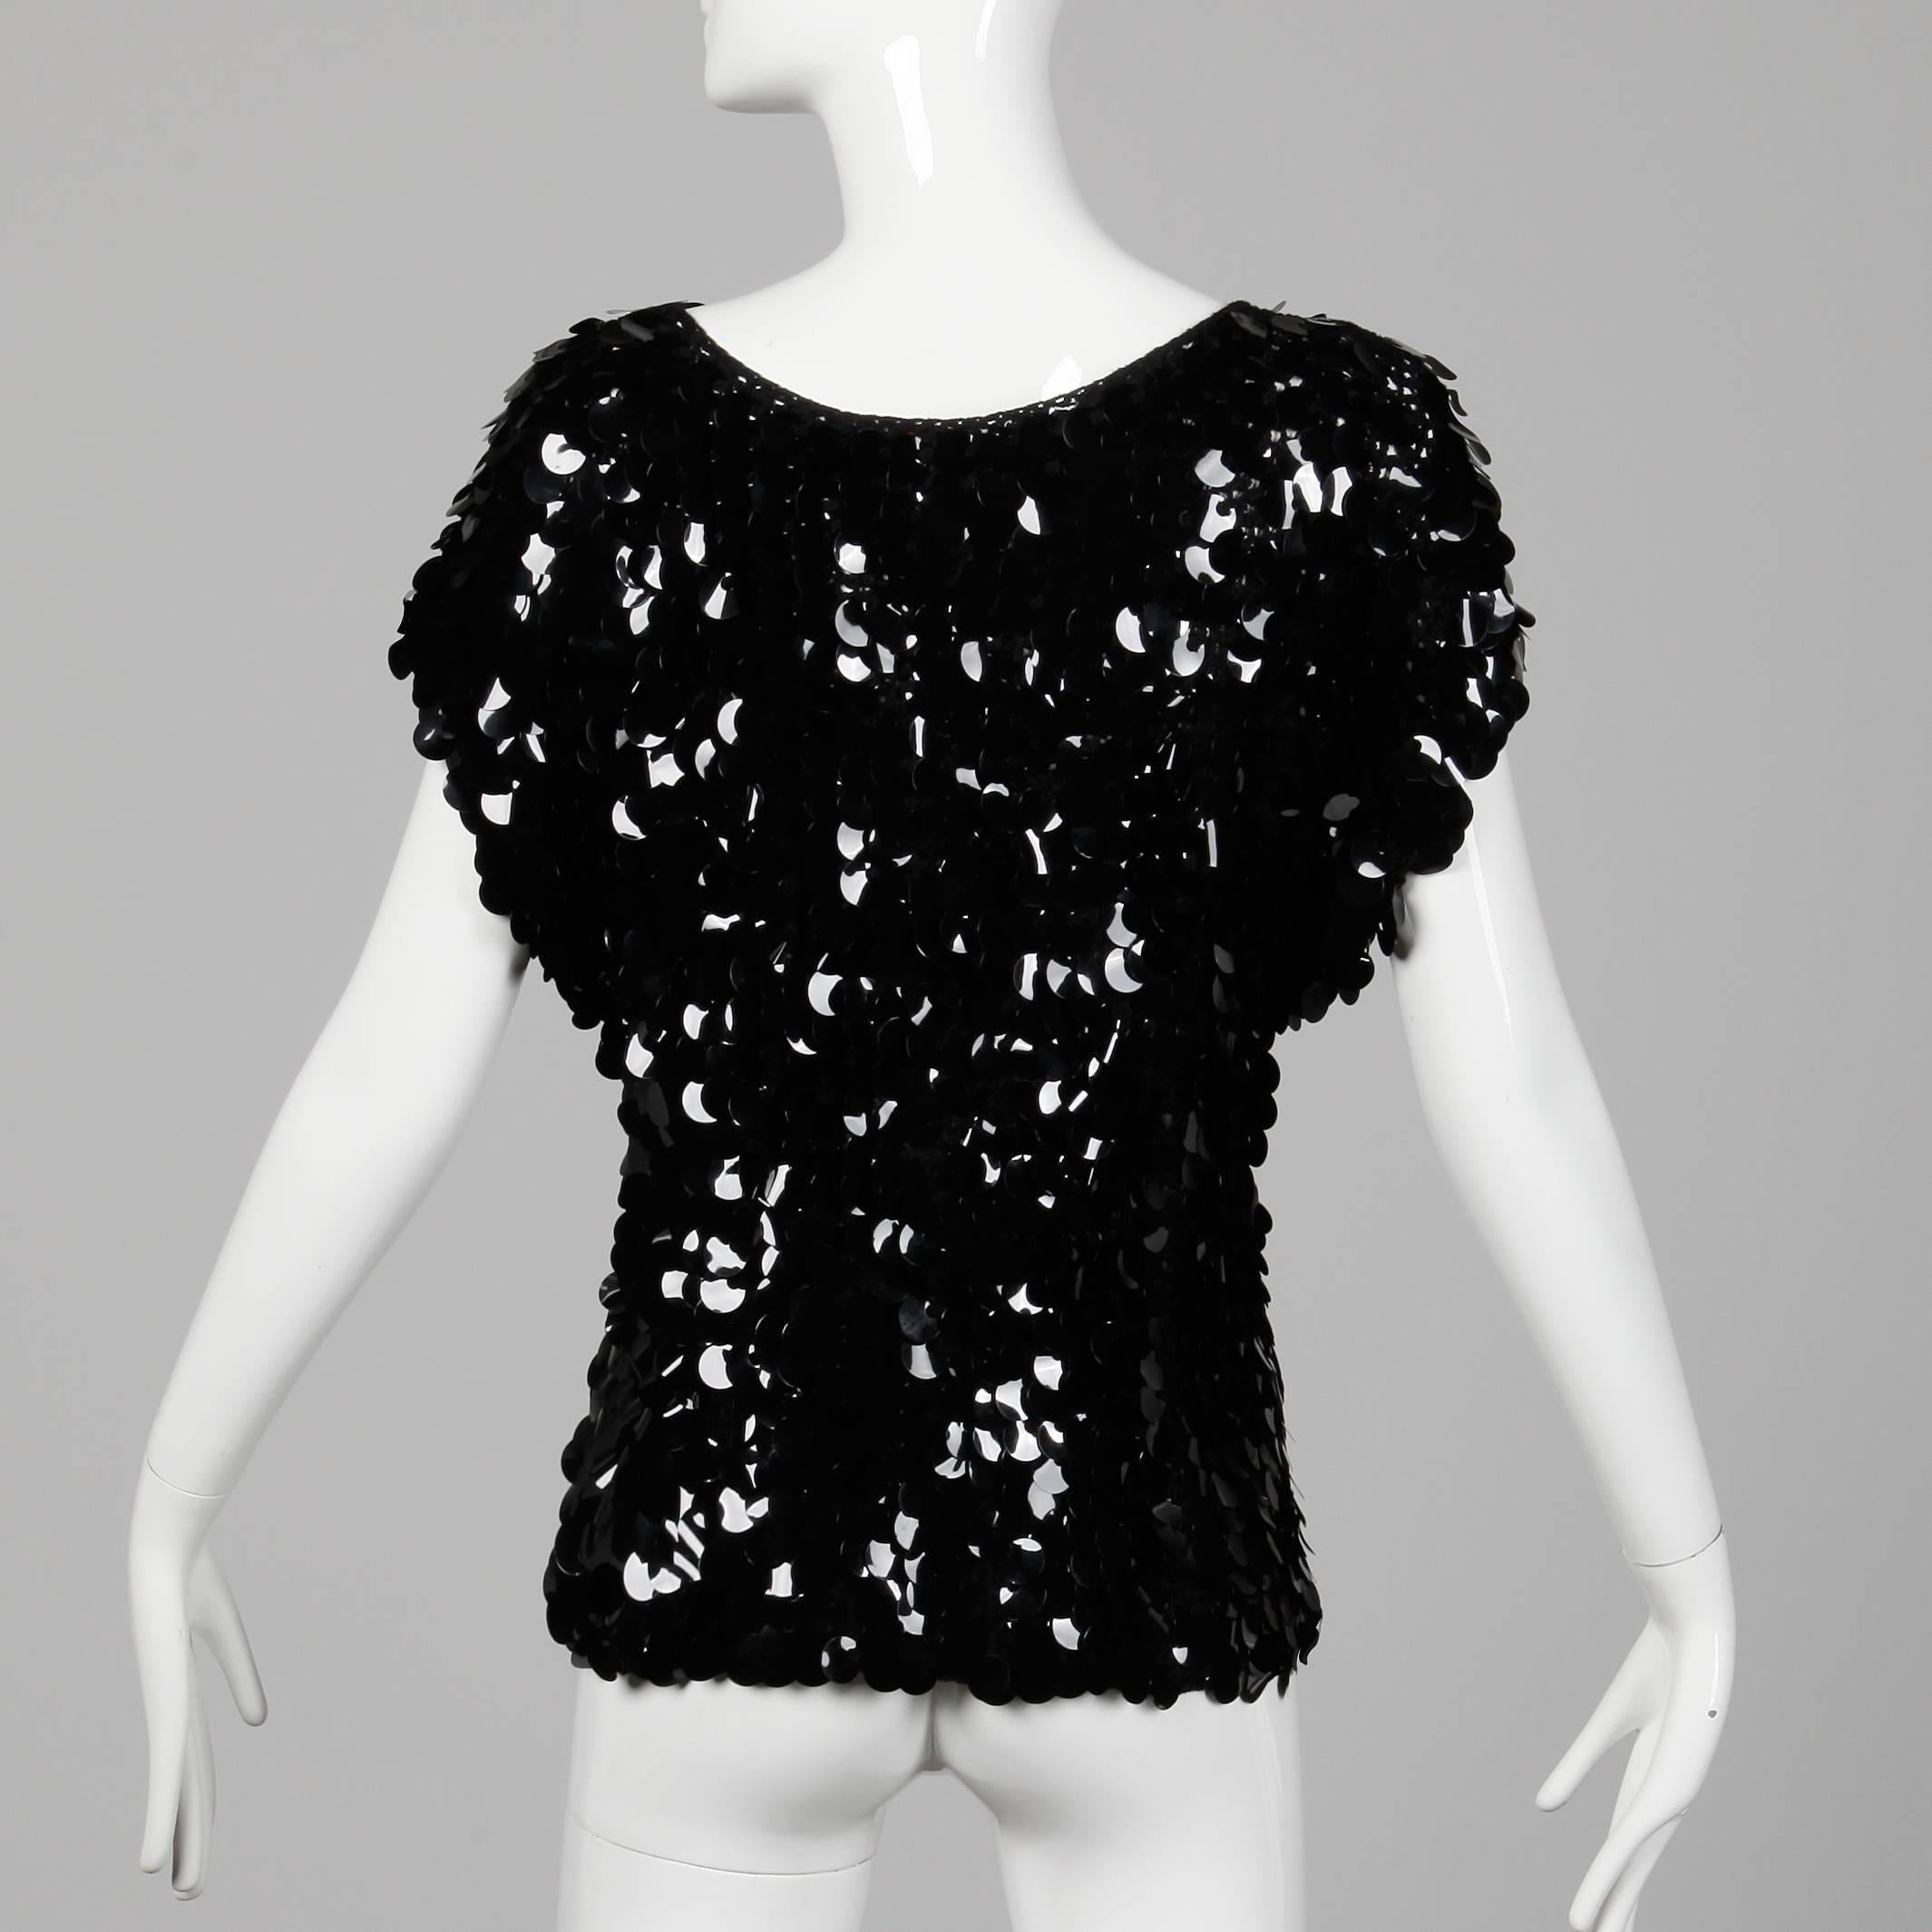 Women's 1980s Oscar de la Renta Vintage Black Knit SparklySequin Paillettes Top or Shirt For Sale